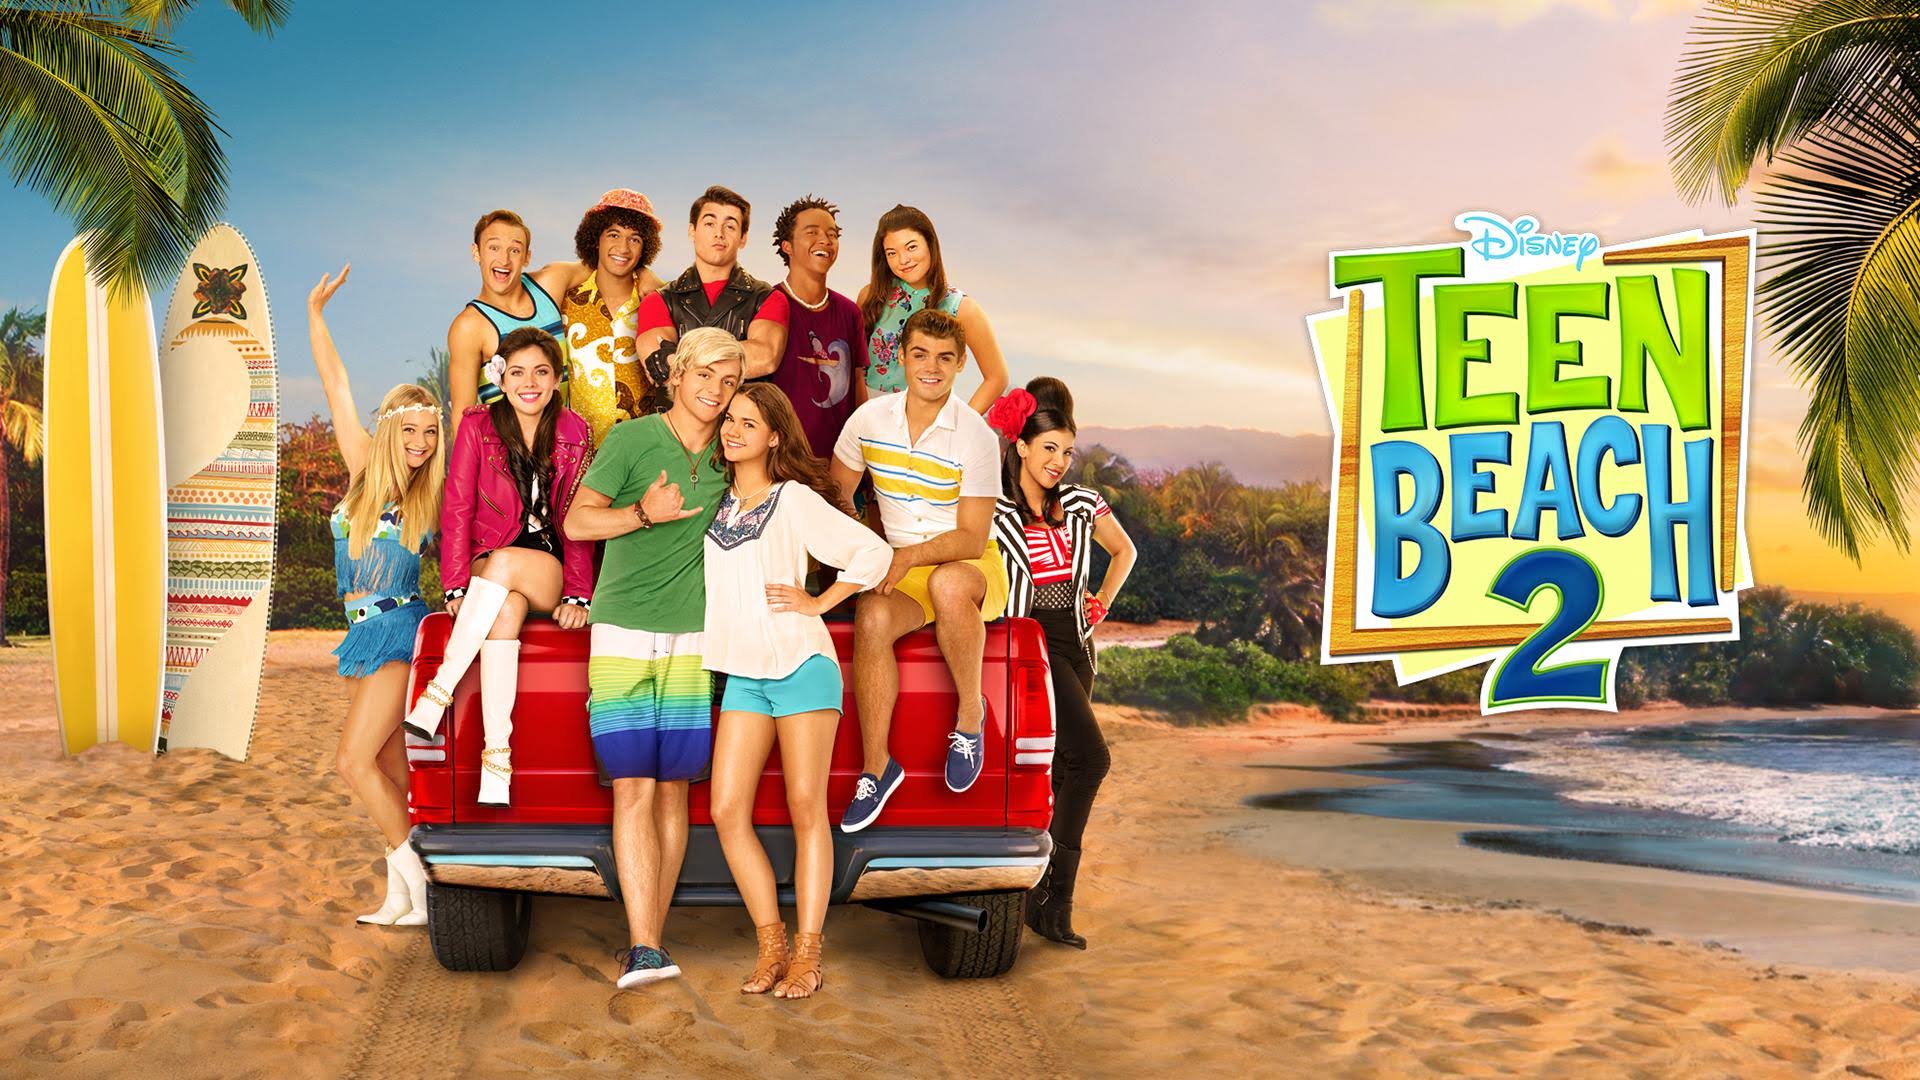 Teen Beach 2 führt fort, was der Vorgänger angefangen hat – Disney Channel Legacy